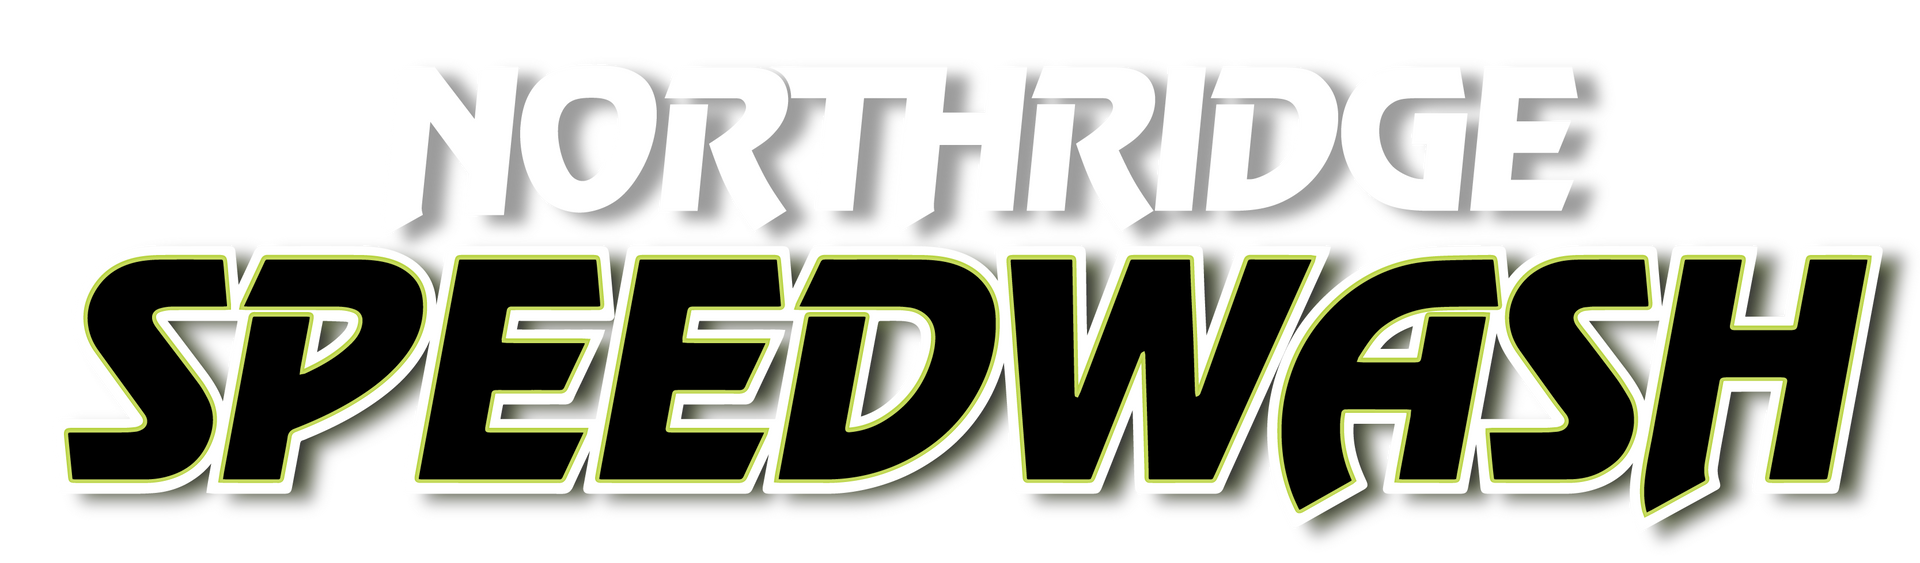 Northridge Speedwash -best carwash in california